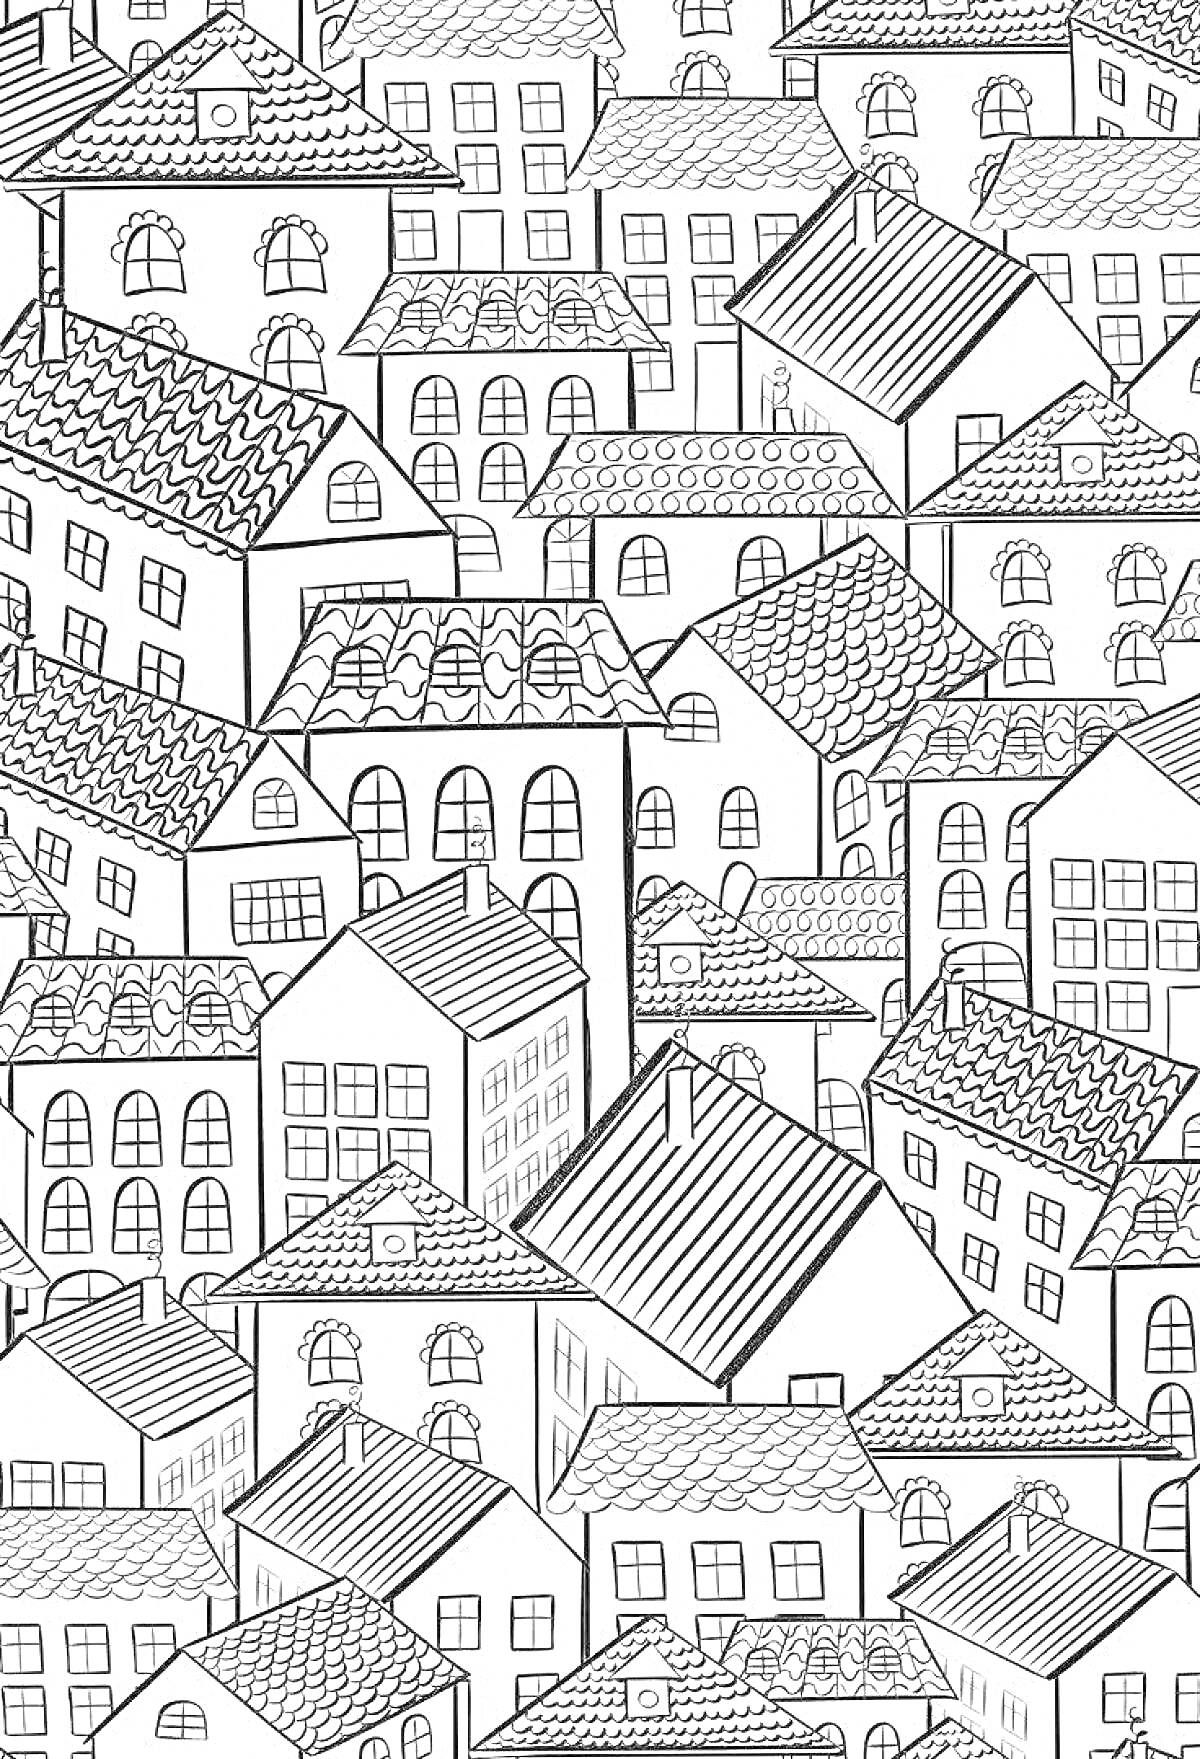 Городские дома с разнообразными крышами и окнами